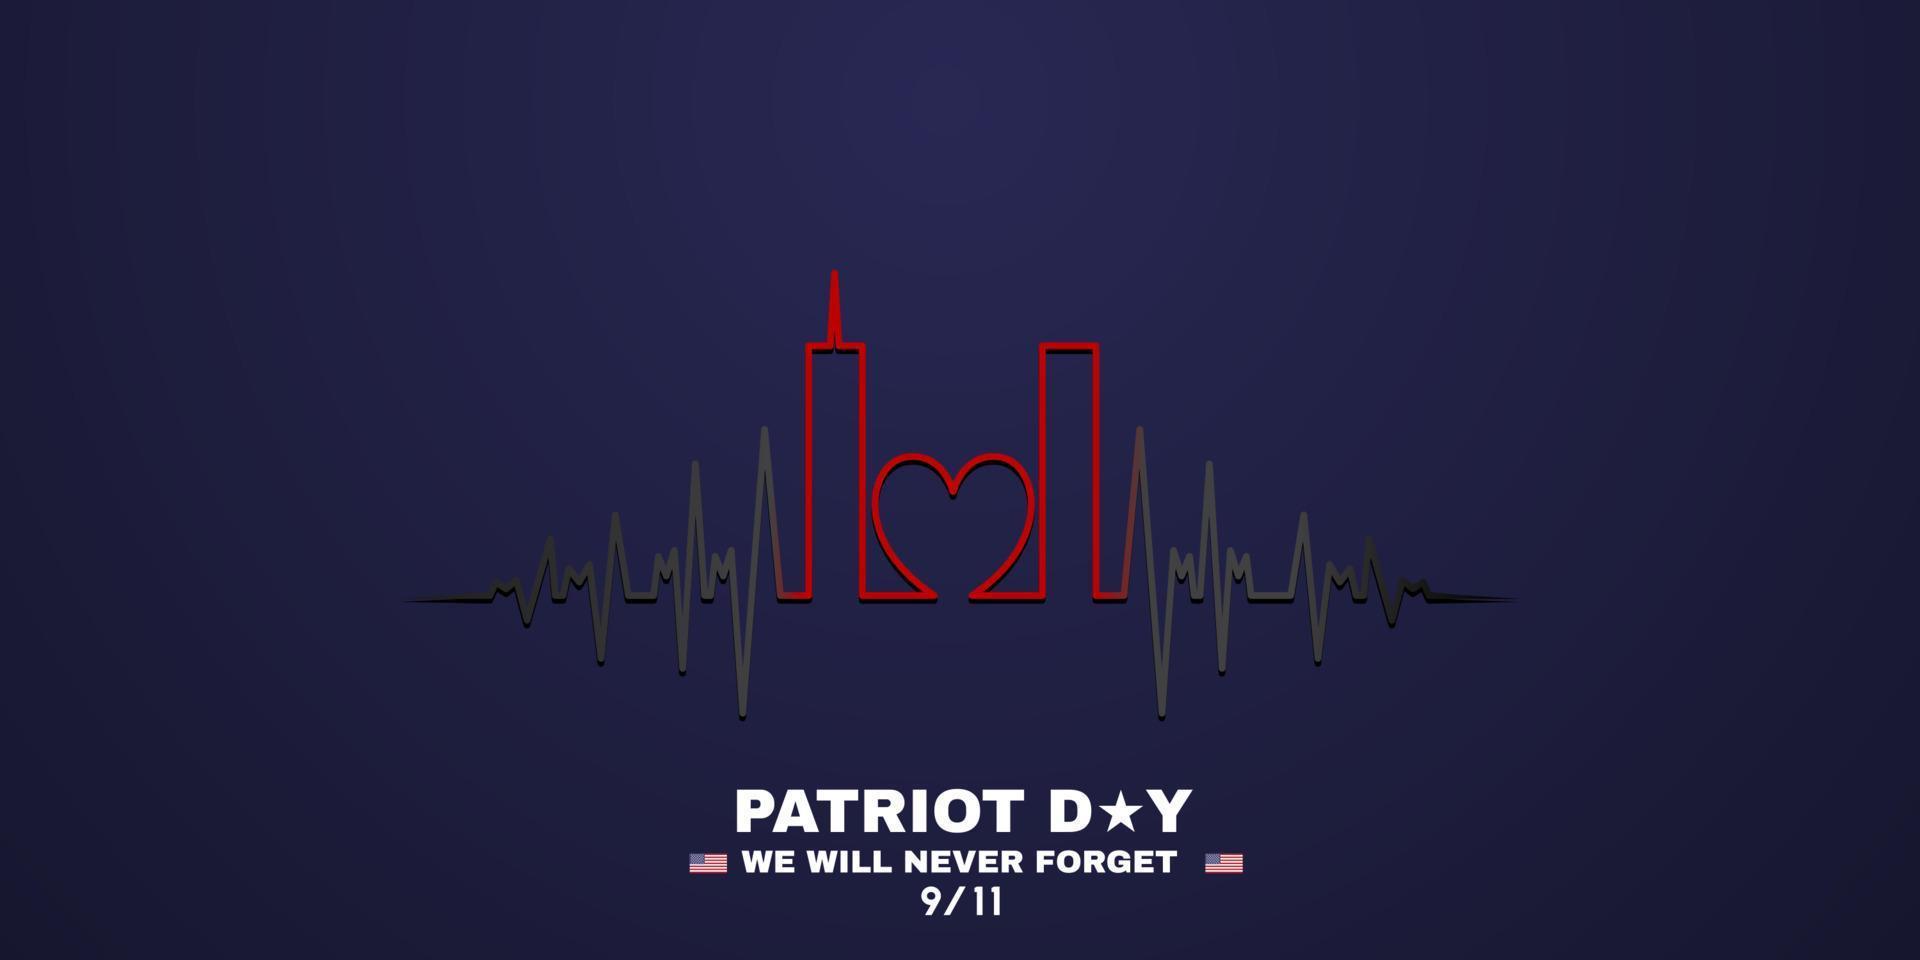 9 11 memorial day setembro 11.patriot day nyc world trade center. nós nunca esqueceremos, os ataques terroristas de 11 de setembro. World Trade Center frequência cardíaca com amor vetor